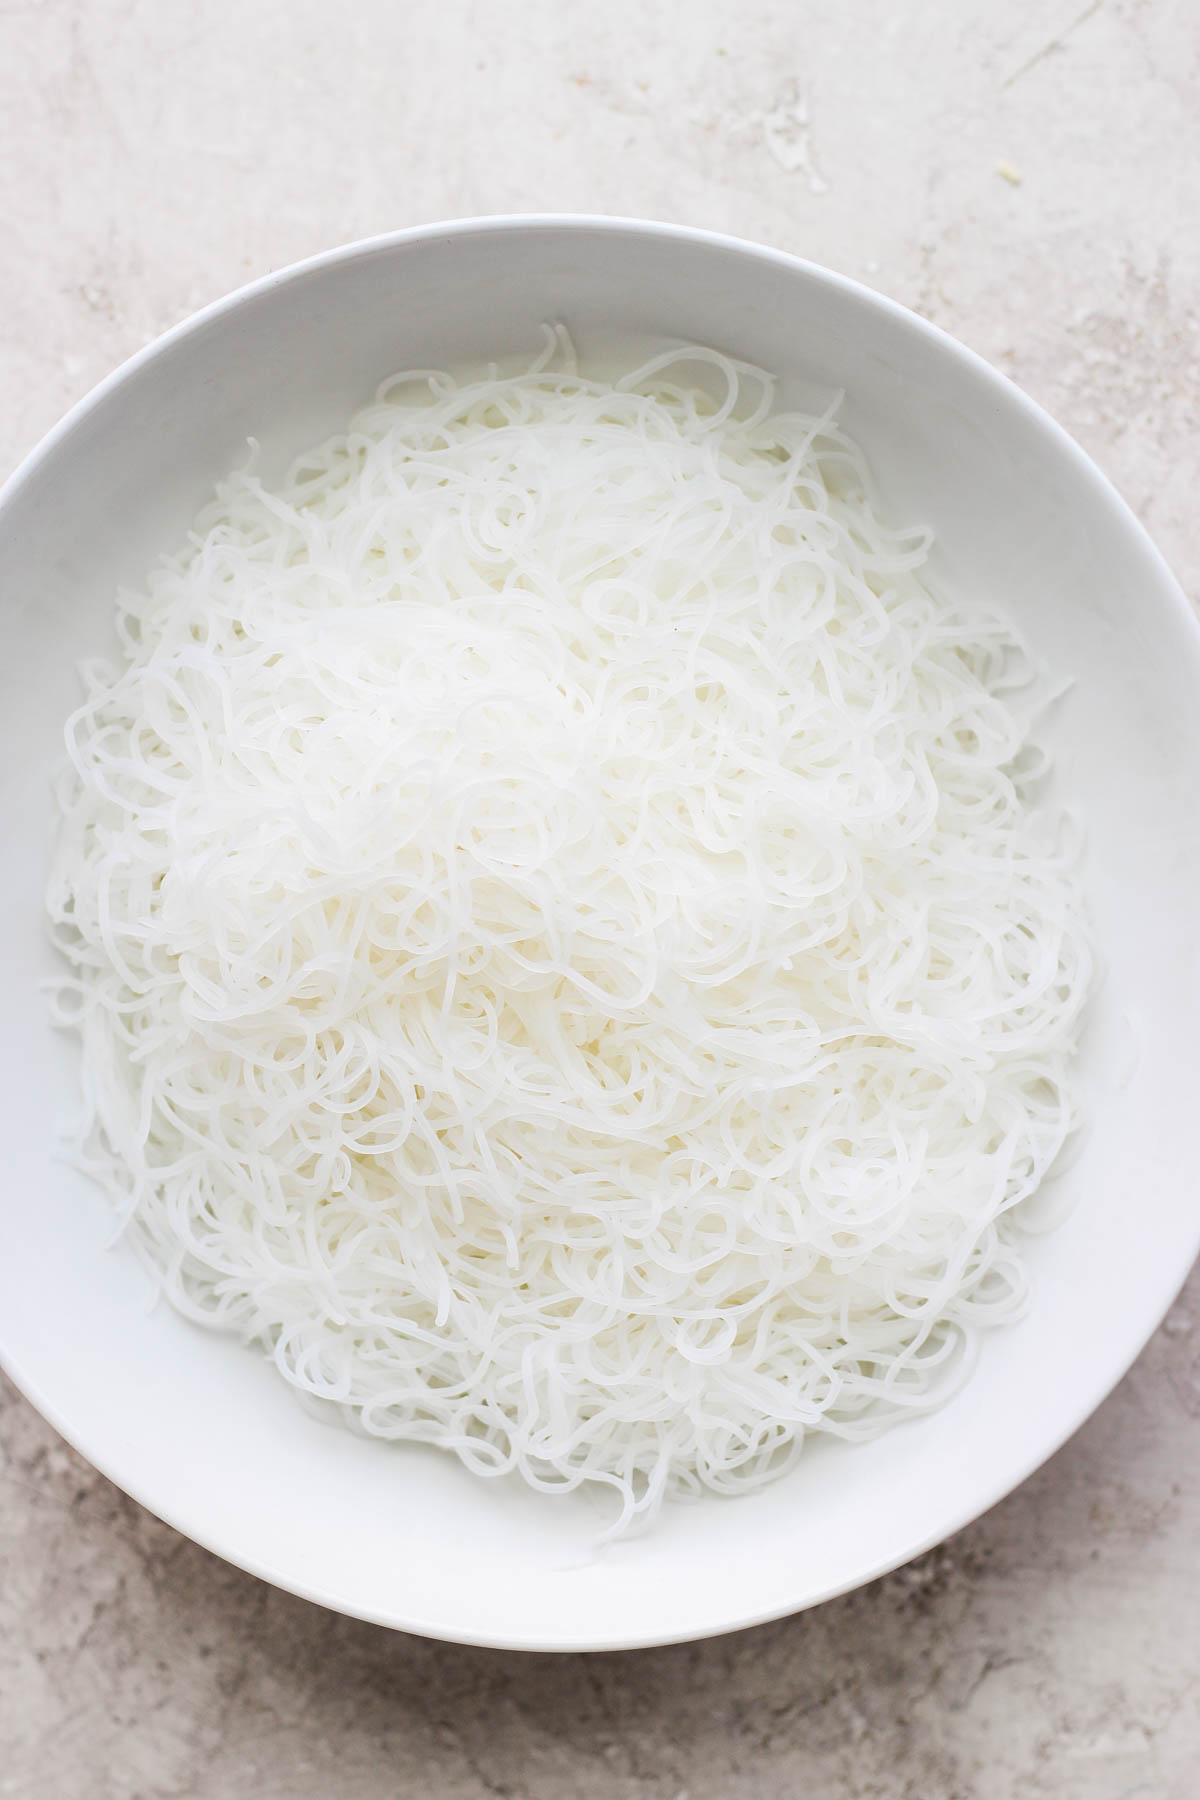 Bowl of vermicilli noodles. 